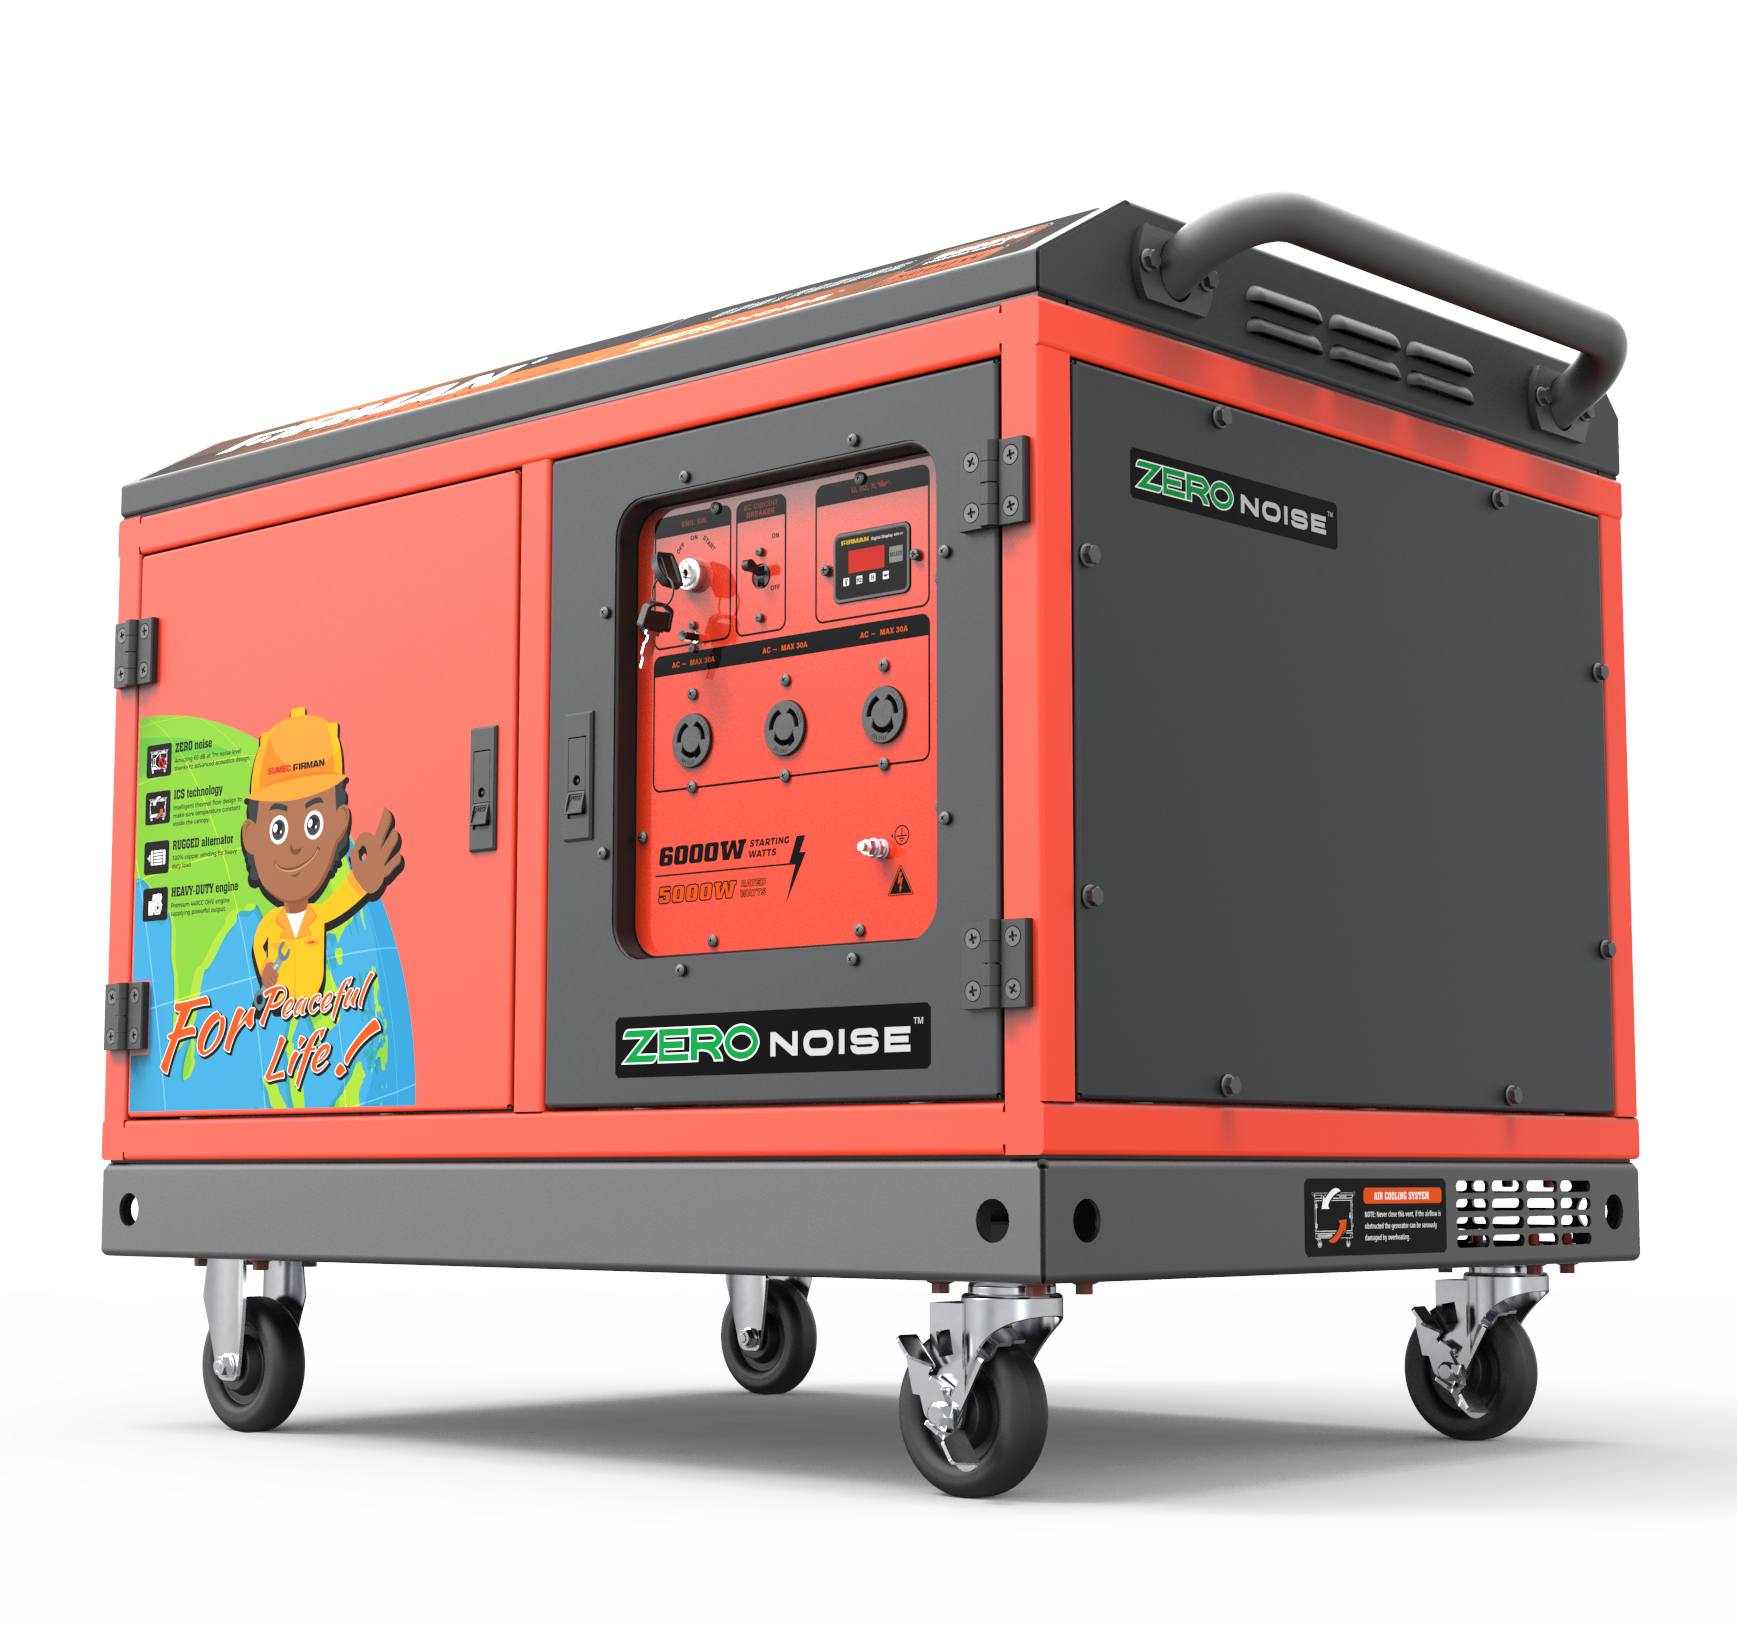 Sumec Firman 6Kva Petrol Generator with Less Noise | SPS12000SE Sumec Firman